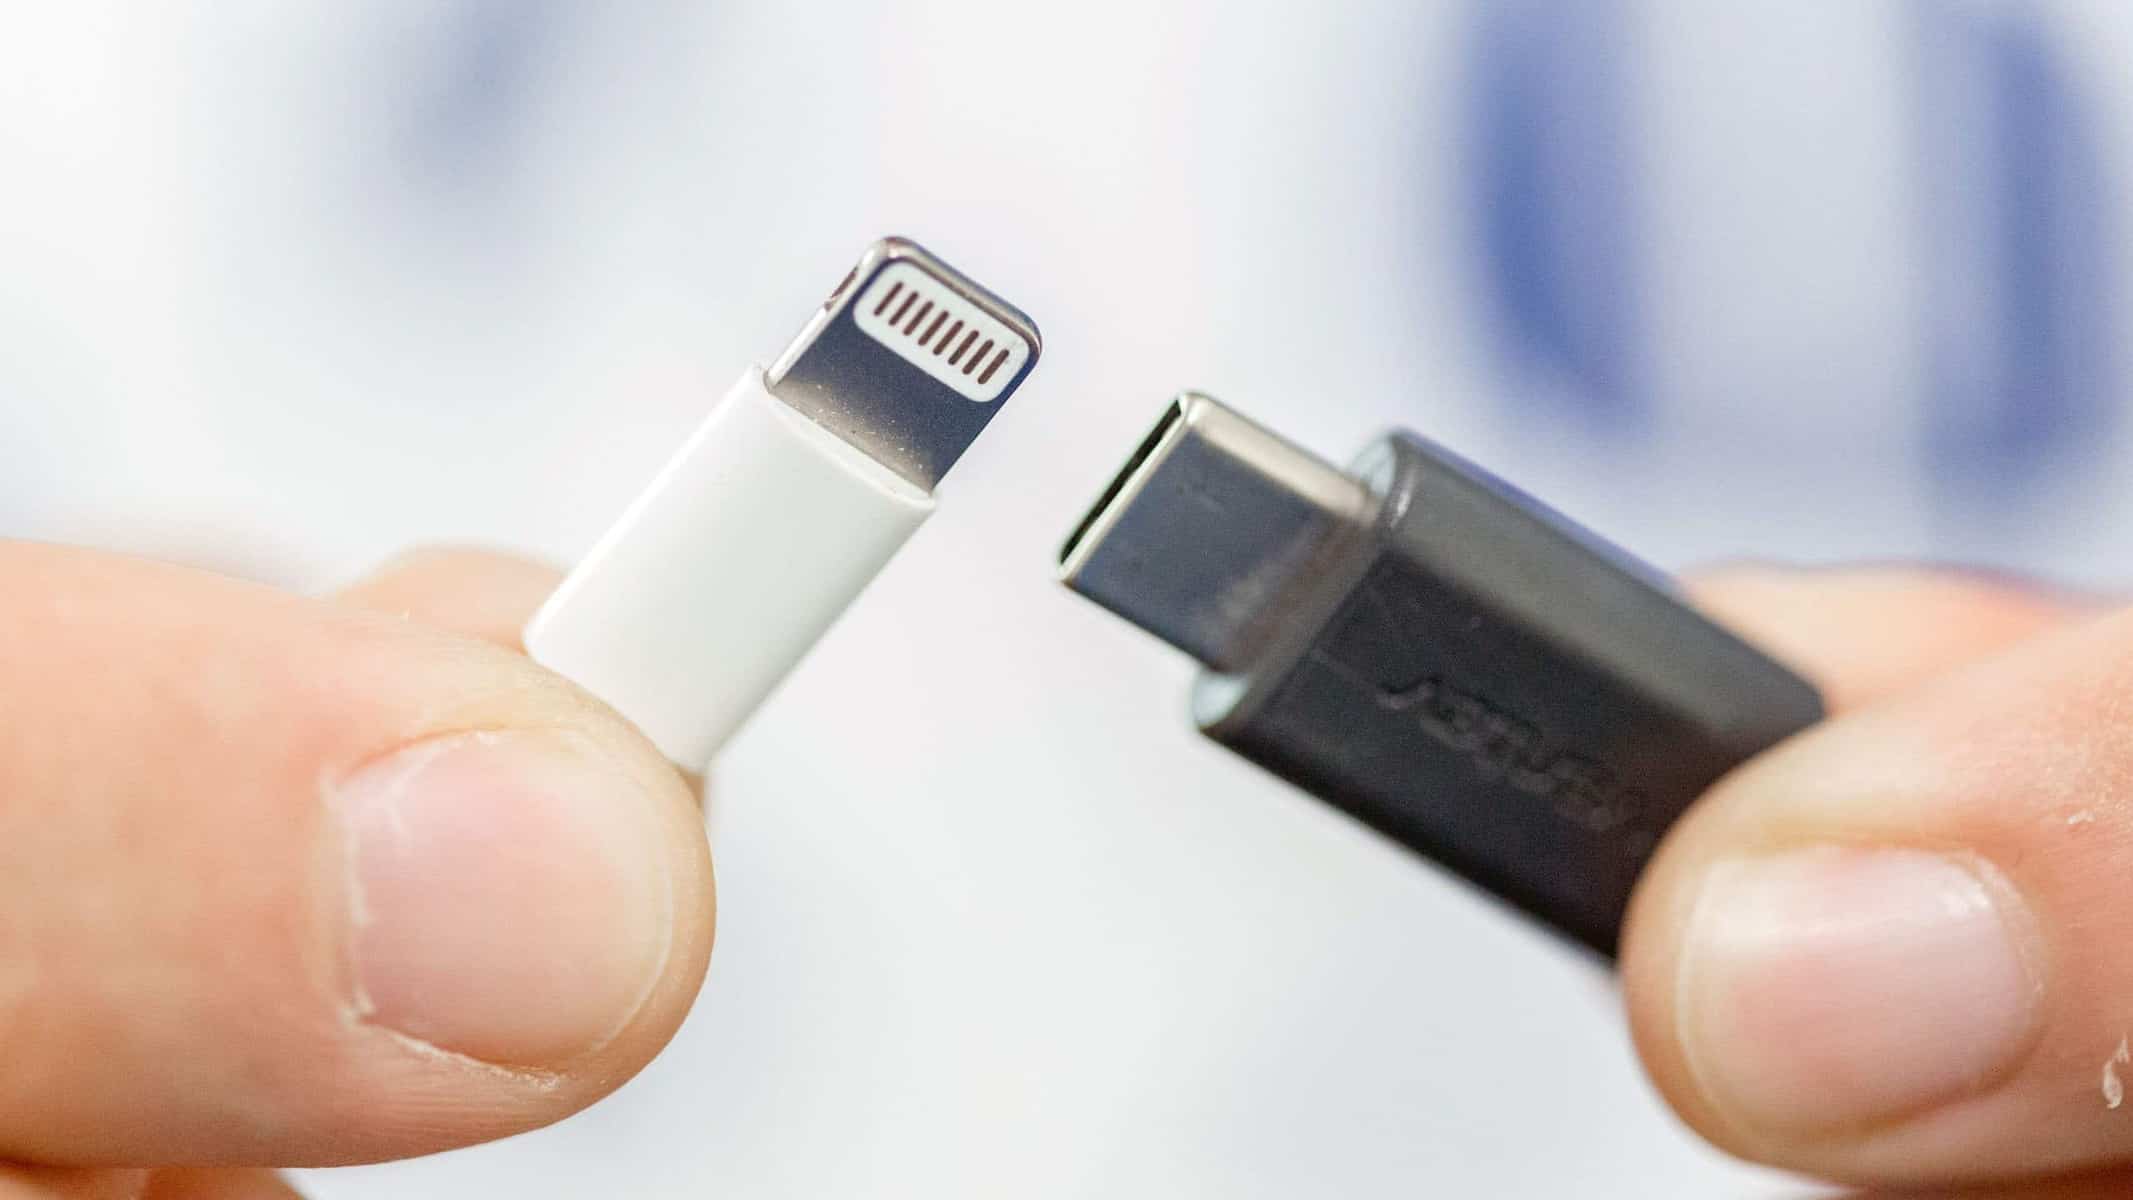 Ladda din iPhone med en USB-kabel? Det kommer inte hända! 1